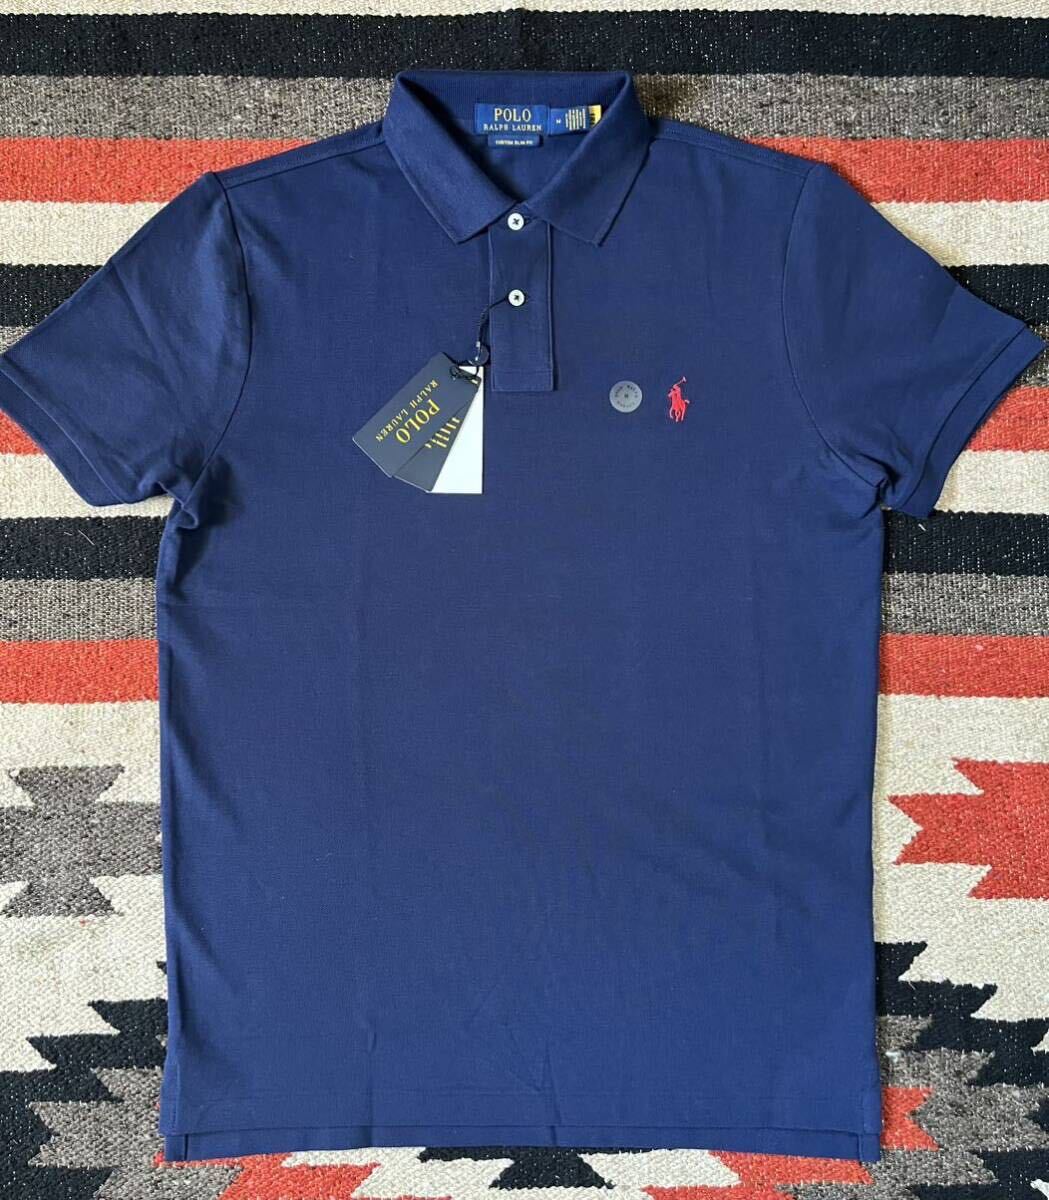  Ralph Lauren рубашка-поло M размер темно-синий Ralph Lauren короткий рукав [ новый товар не использовался ] олень . материалы 